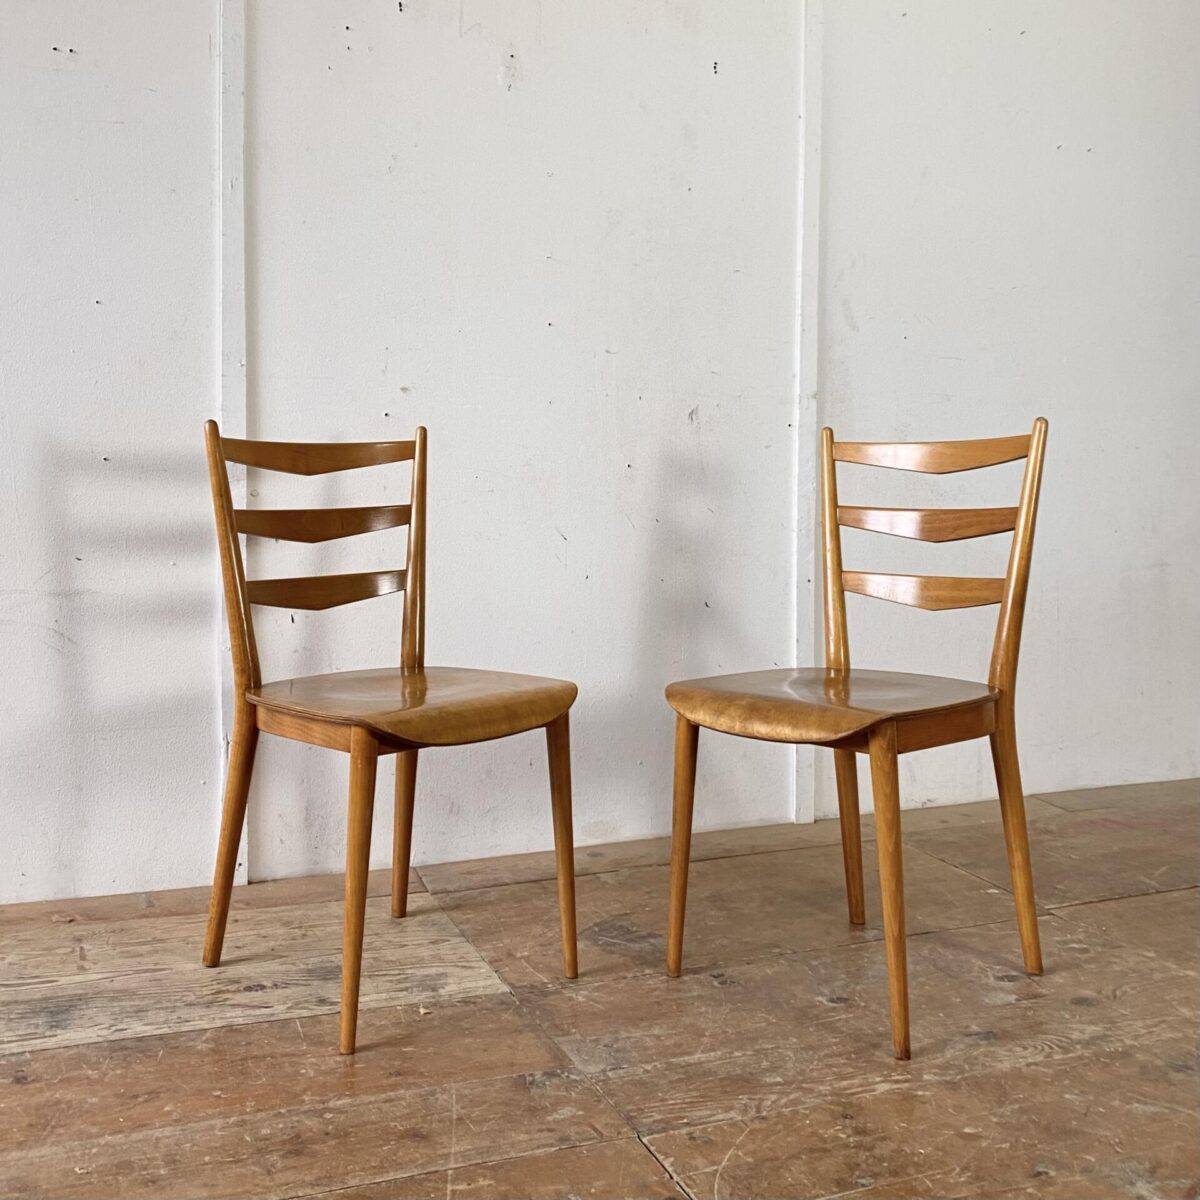 Deuxieme.shop Max Bill kreuzzargen Stuhl. 4er Set Horgenglarus Stühle Jahrgang 1964. Die Esszimmer Stühle sind in gutem stabilen Original Zustand. Die konischen Rundbeine und die Rücken Sprossen sind Dampfgebogen. Die Sitzfläche, mit Mulde, ist aus Birkensperrholz formverleimt. 